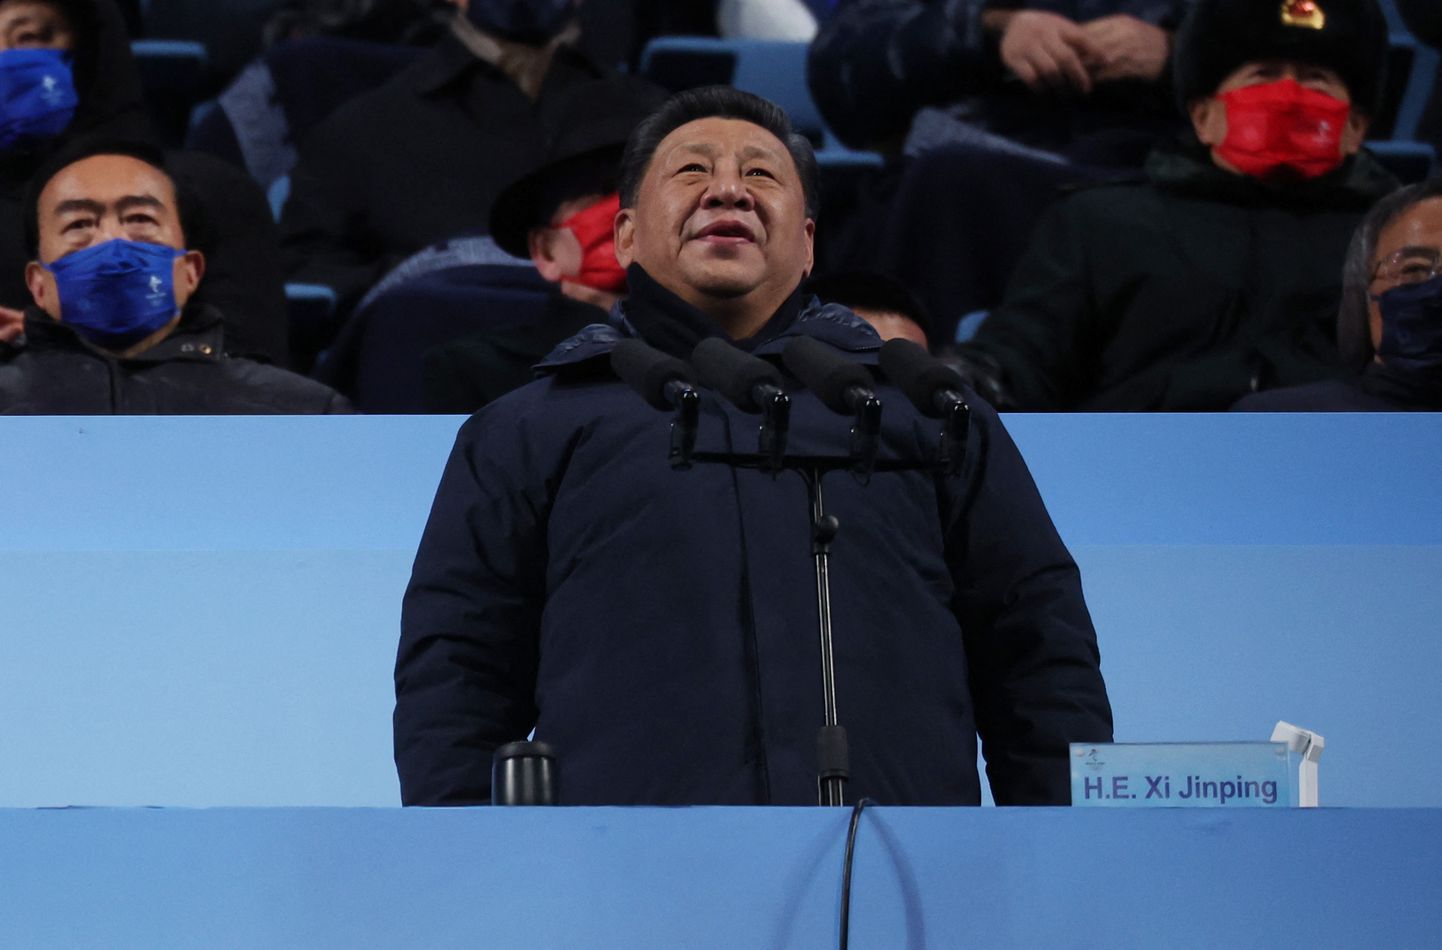 Hiina Kommunistliku Partei peasekretär ja Hiina Rahvavabariigi president Xi Jinping 4. veebruaril 2022 Pekingi taliolümpia avatseremoonial mikrofonide eest.